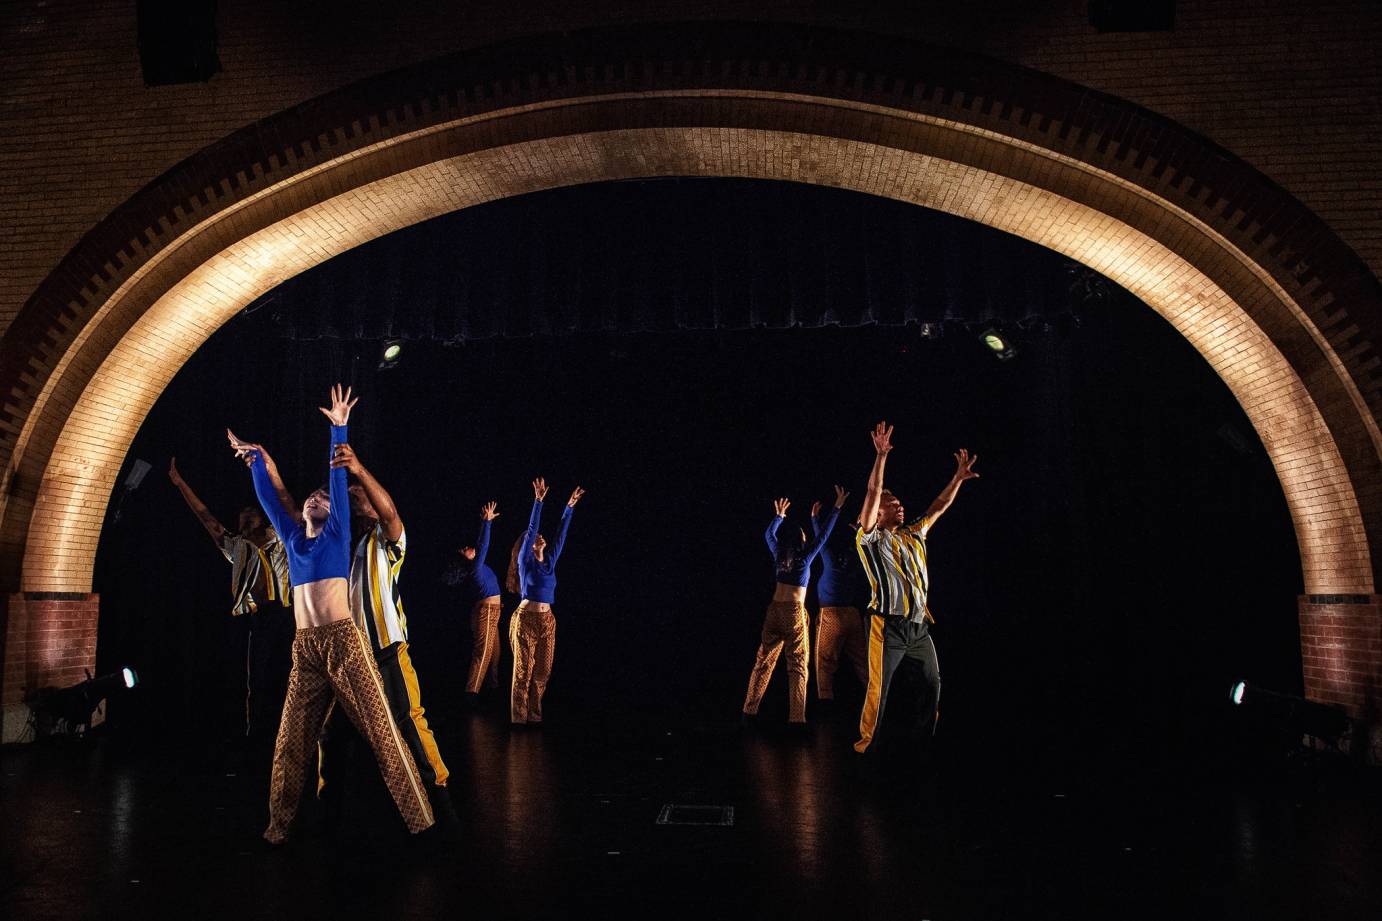 Dancers facing outward in a circle raise their arms high